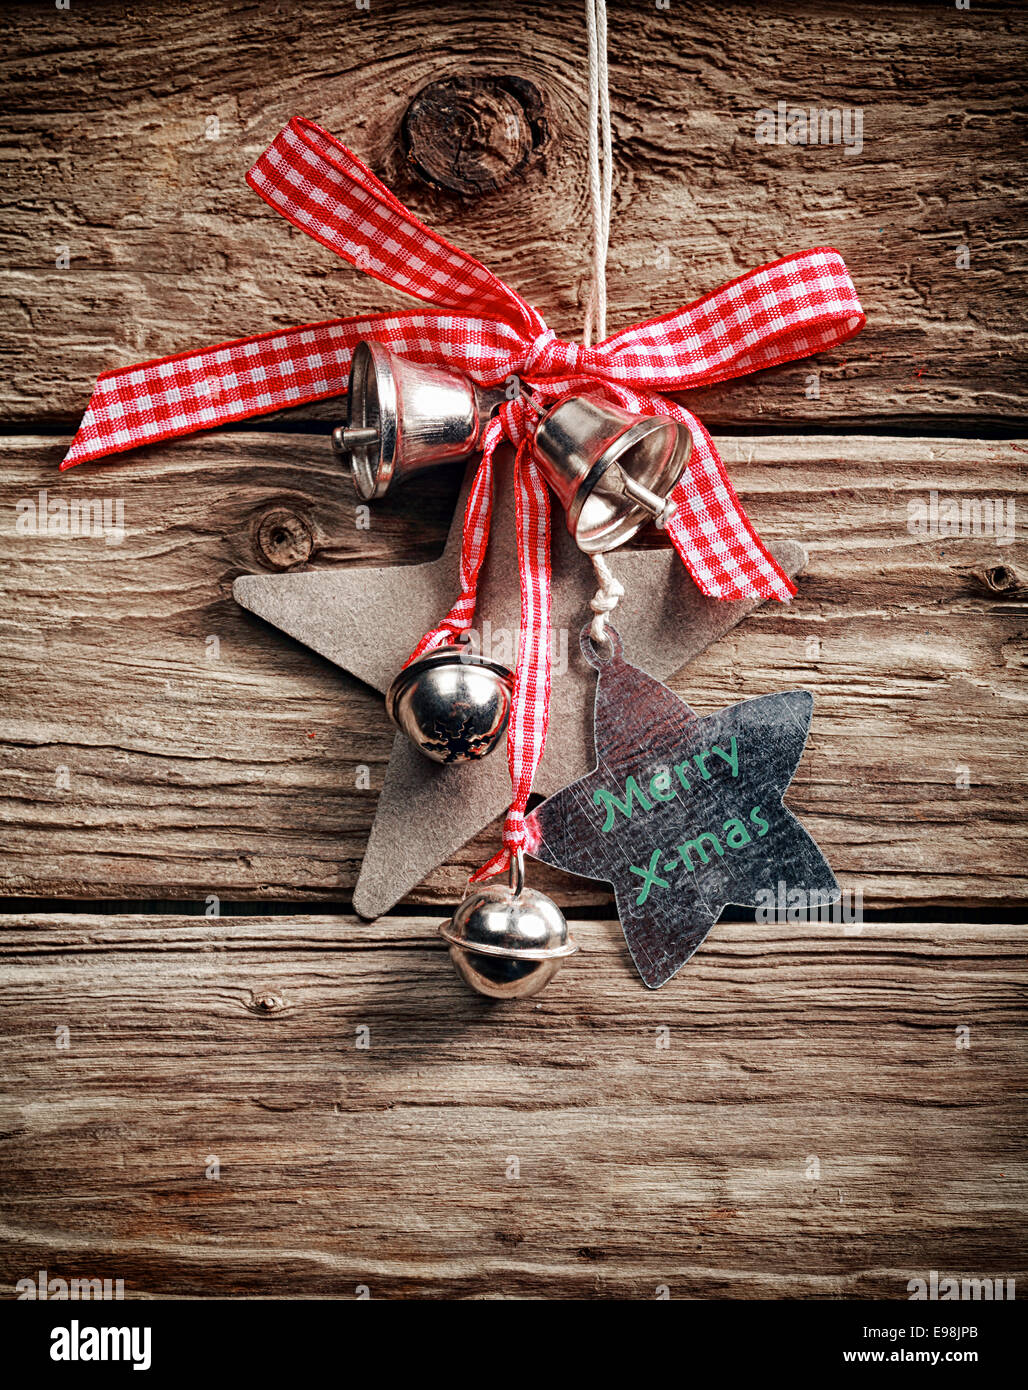 Traditionelle Weihnachts-Dekoration mit karierten Schleife, Silber Glocken und Sternformen wünschen Frohe Weihnachten, eine rustikale Holzwand hängen Stockfoto